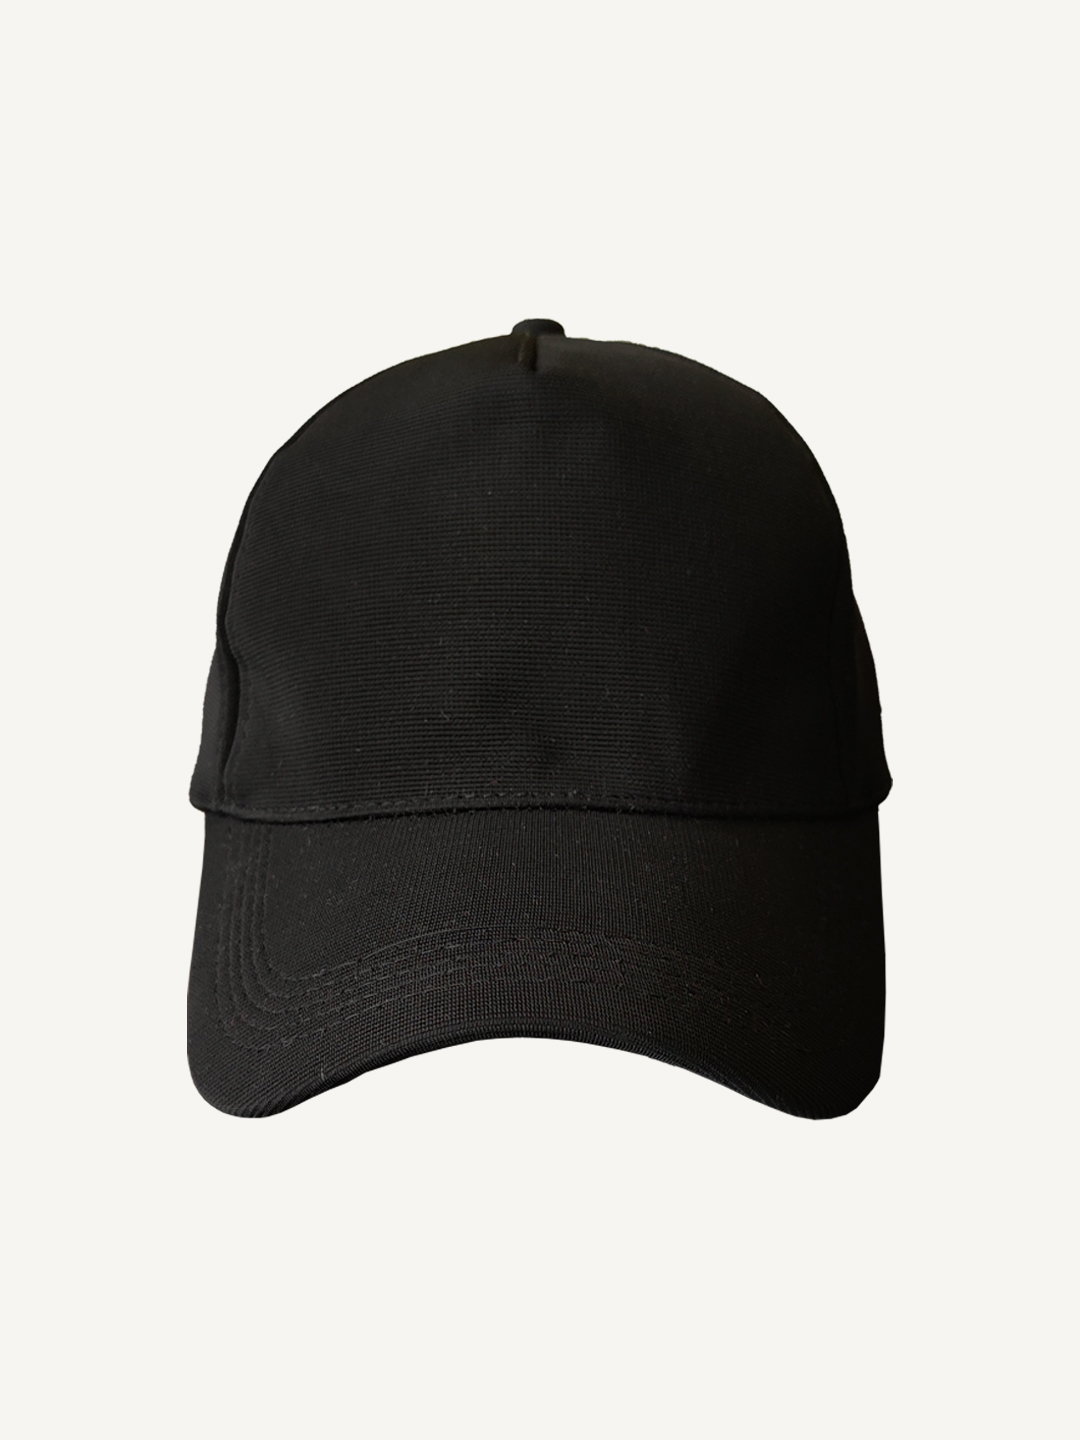 creativeideas.store | Plain Black Cap 0